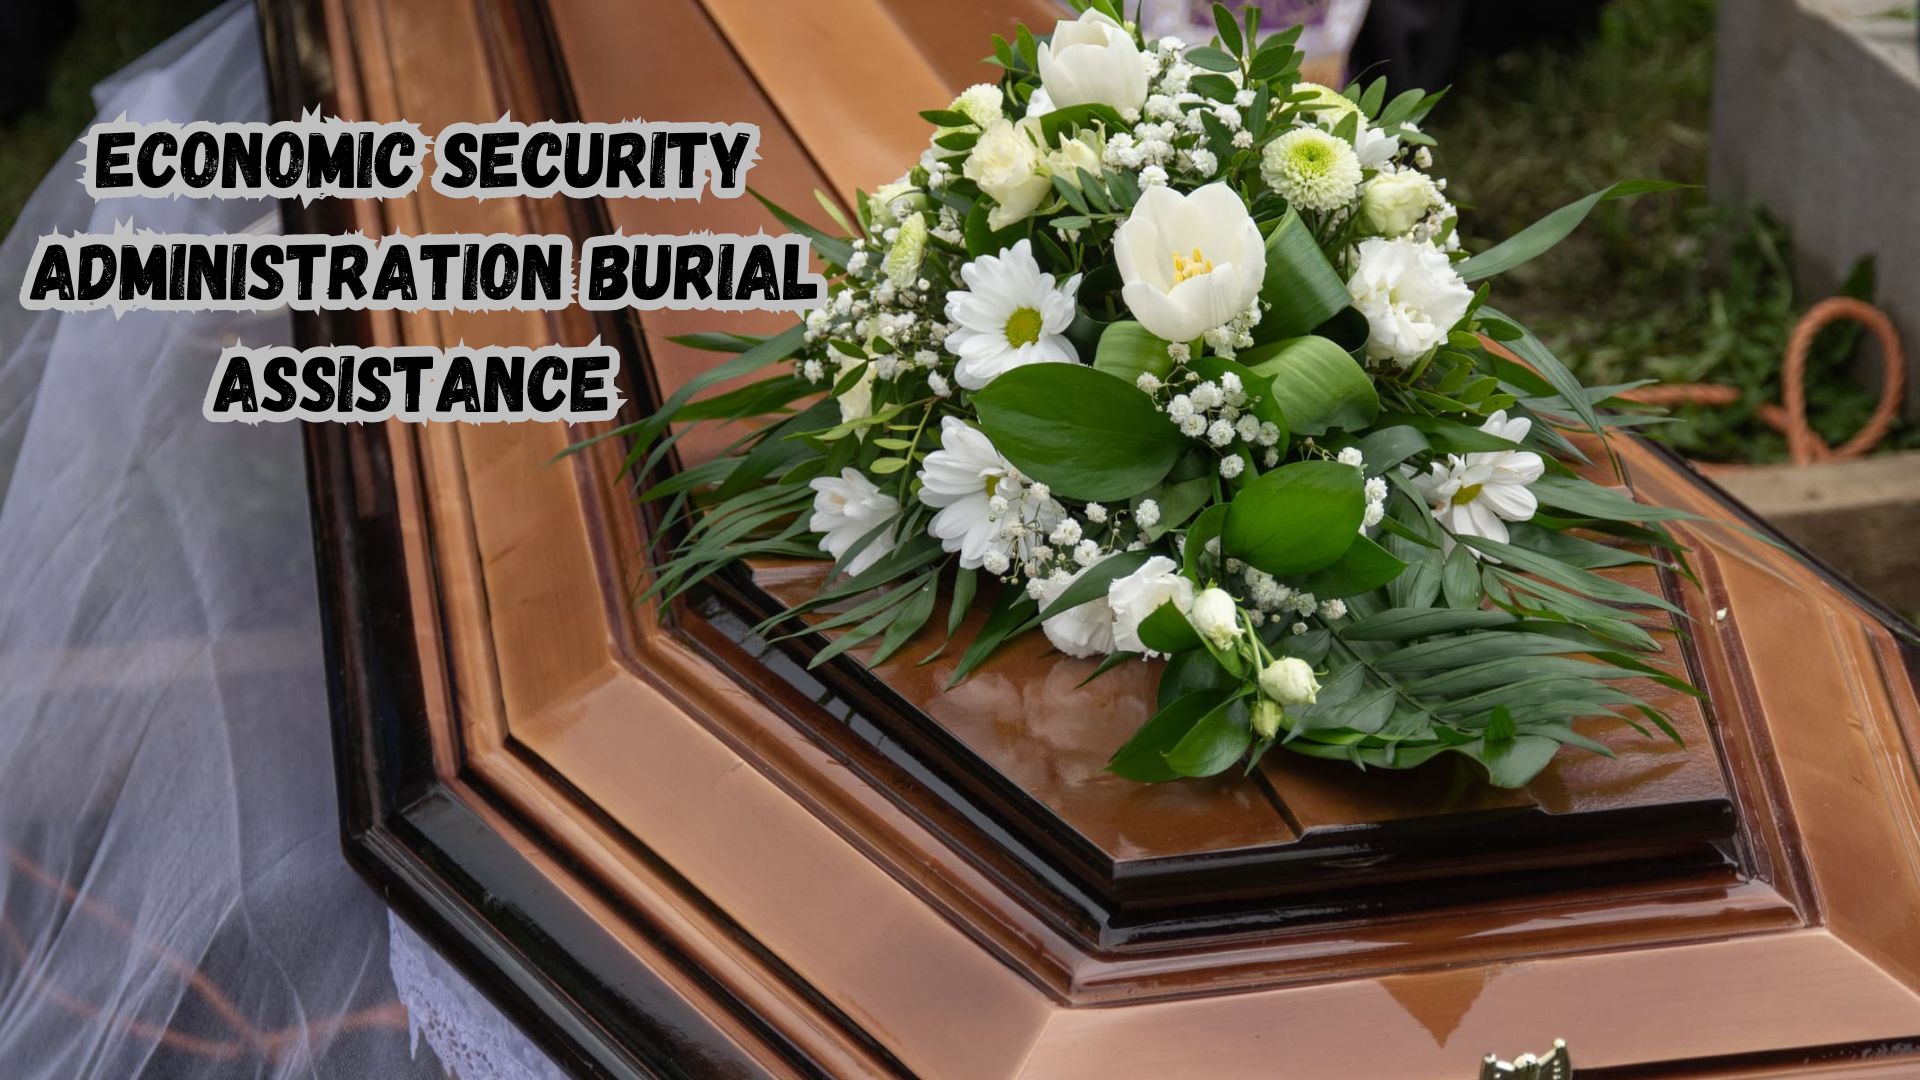 Economic Security Administration Burial Assistance (Washington, D.C.).